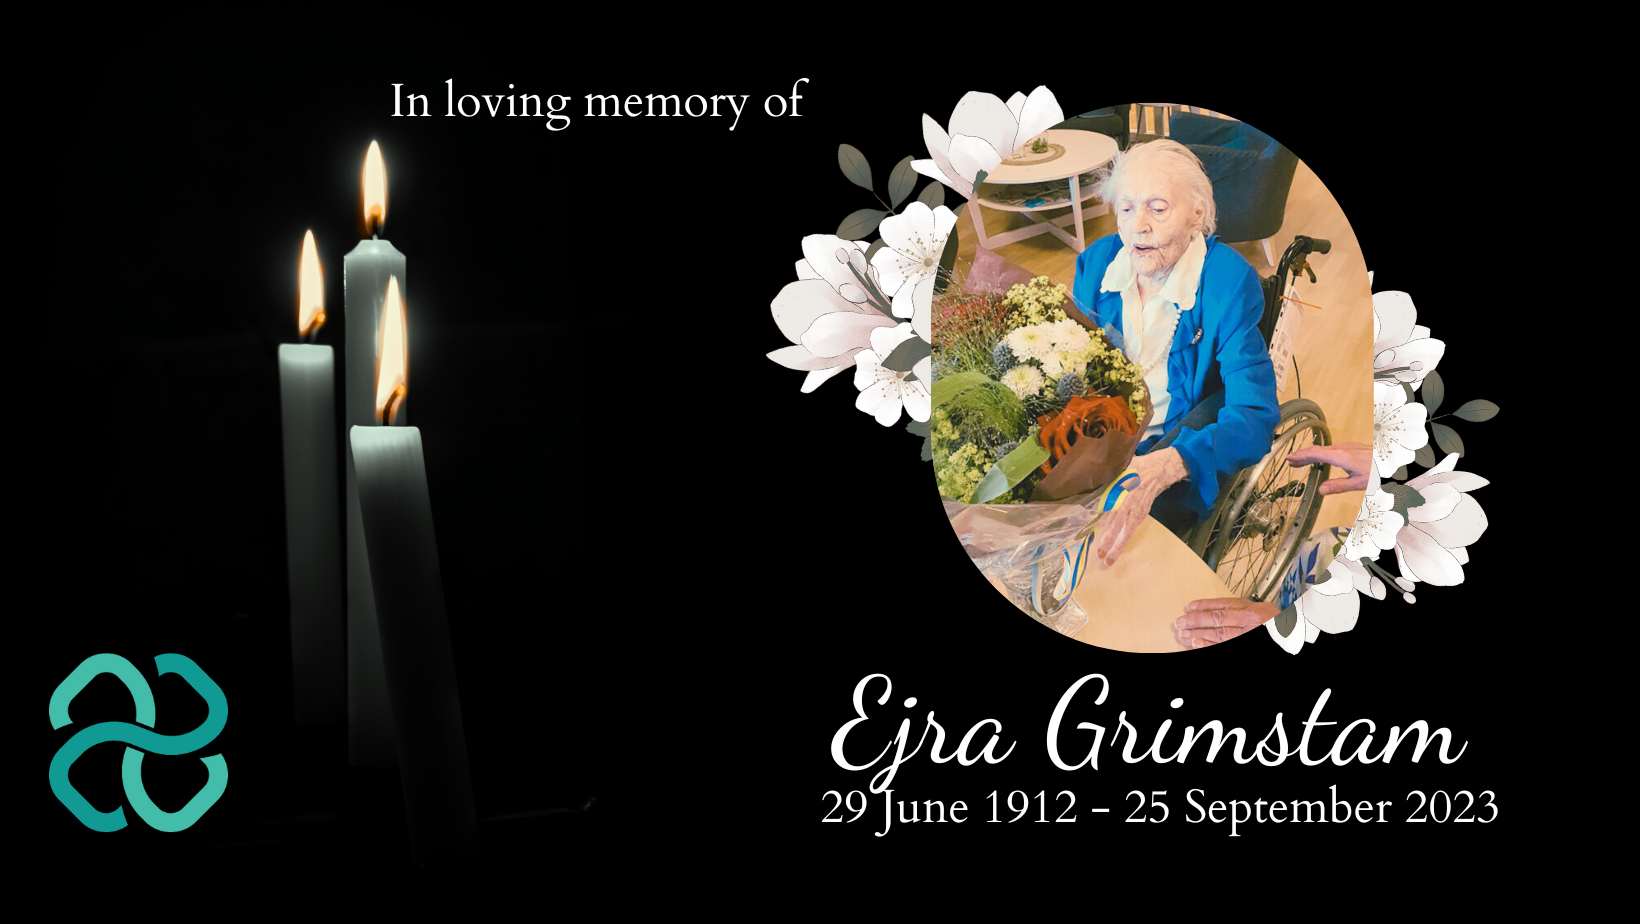 Ejra Grimstam dies at 112